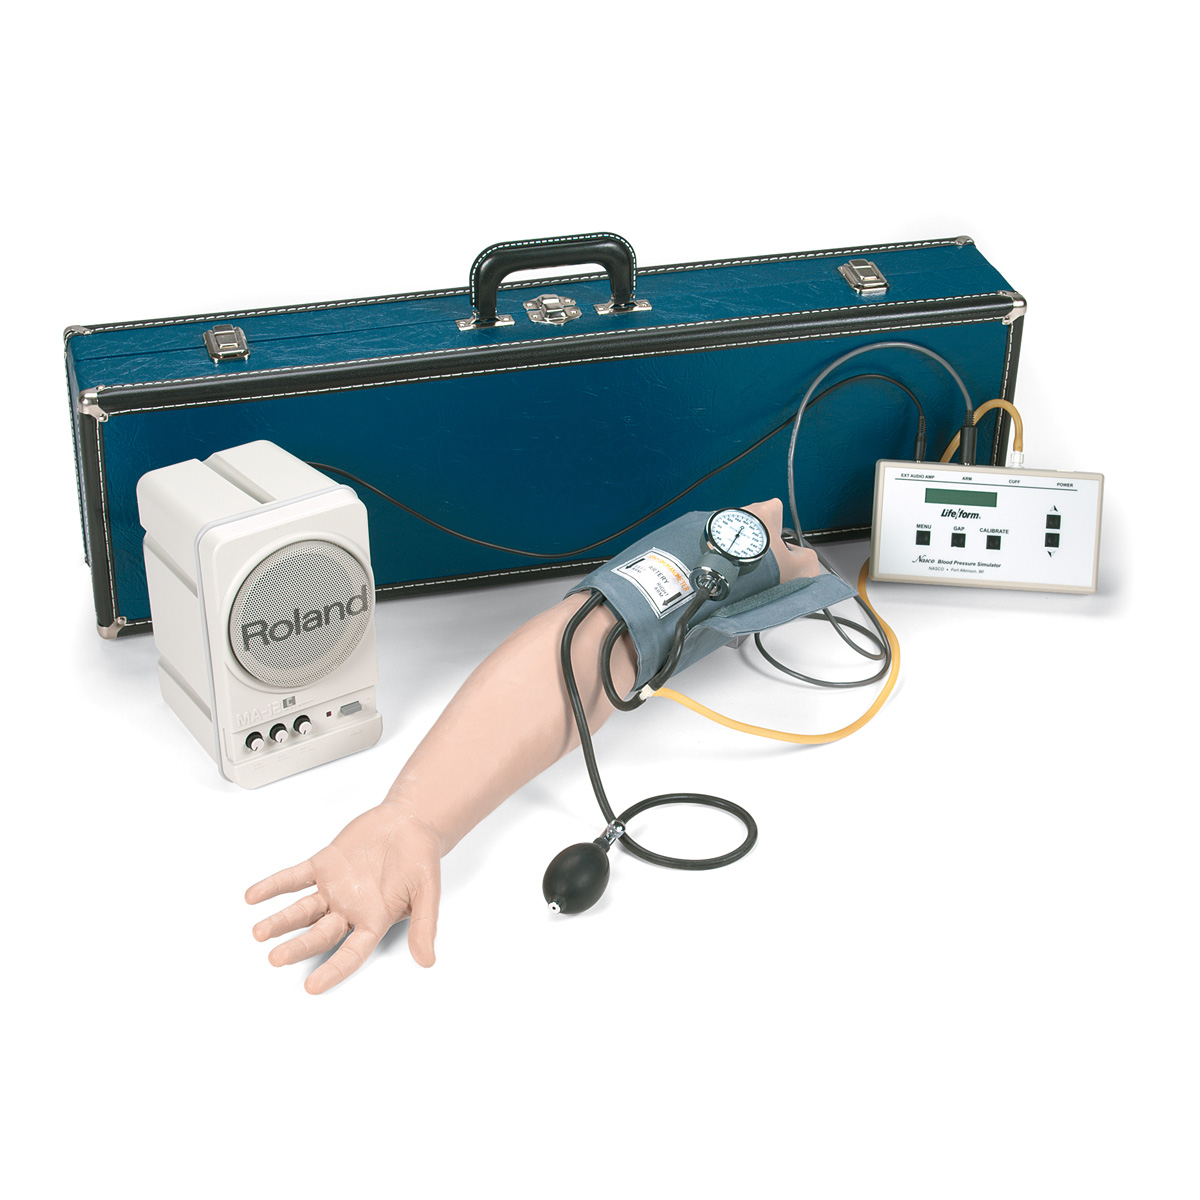 Blutdruck-Arm mit Lautsprechern, 115 Volt, Bestellnummer 1005622, W44089, LF01129U, Nasco Life/form